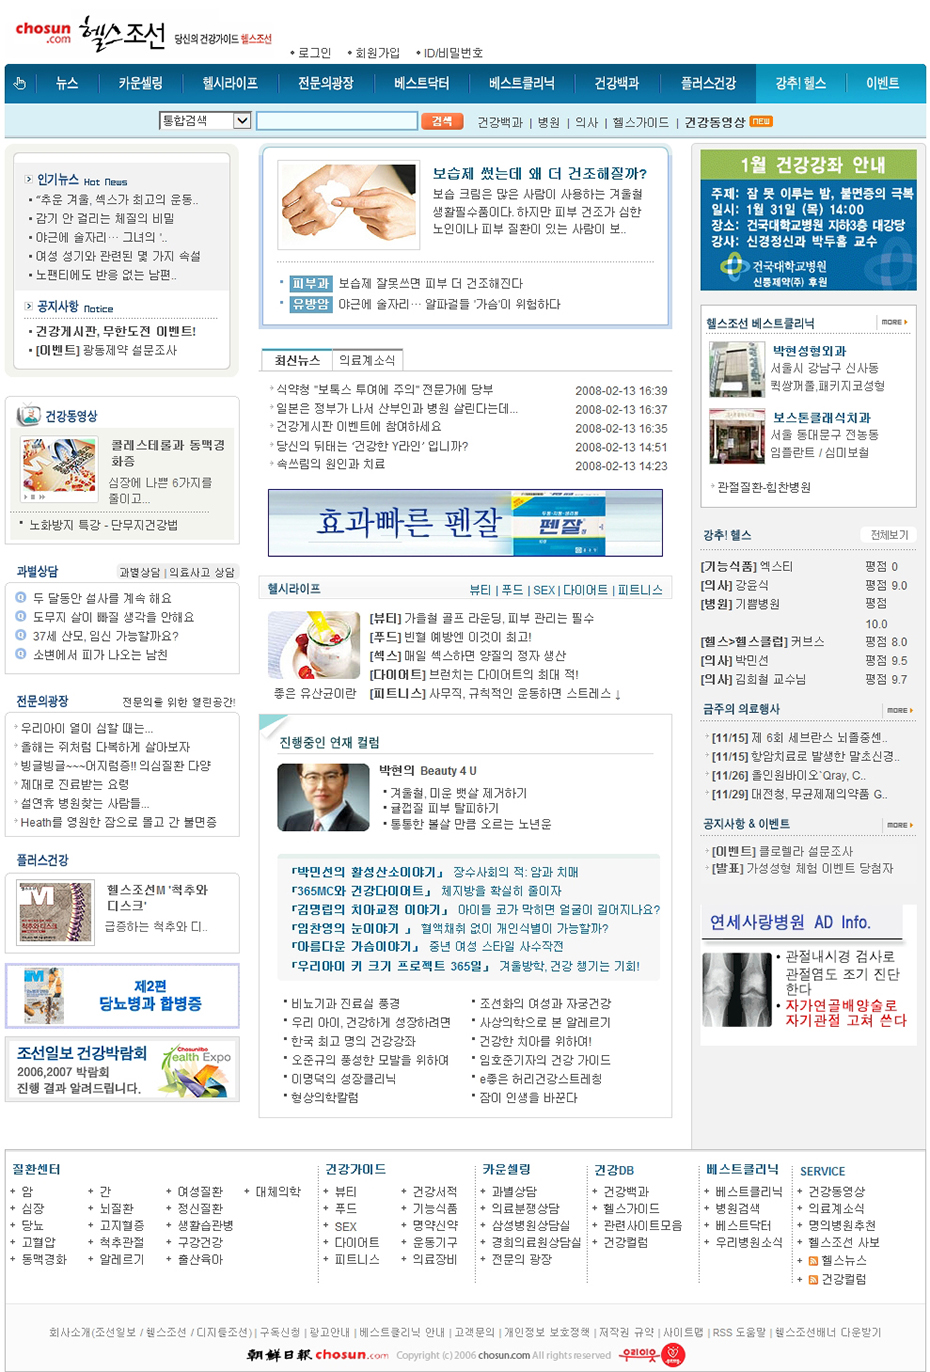 2008년 헬스조선닷컴